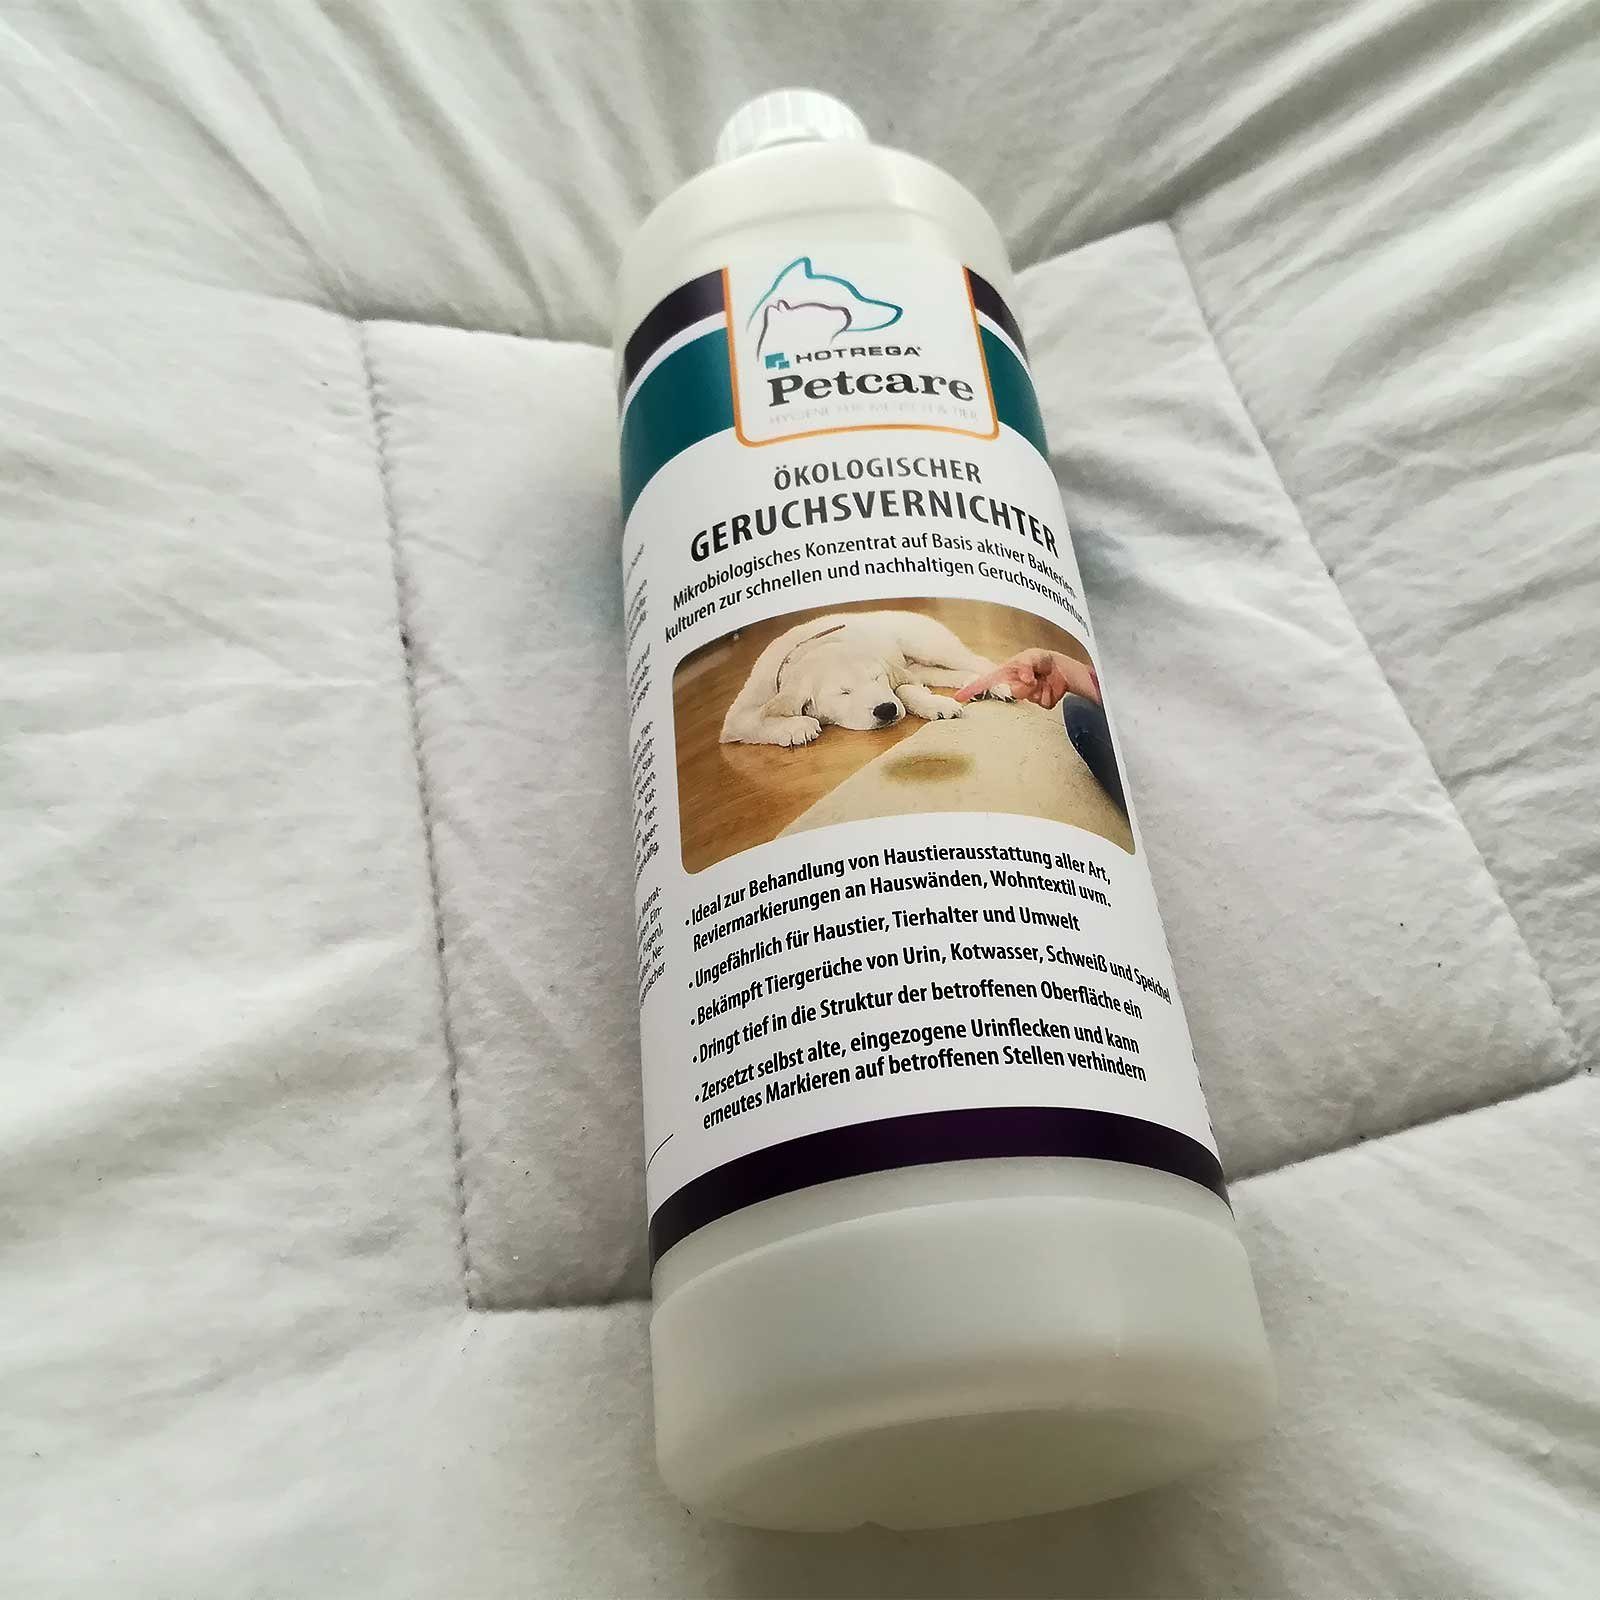 HOTREGA® Ökologischer Geruchsvernichter Petcare Universalreiniger Liter 1